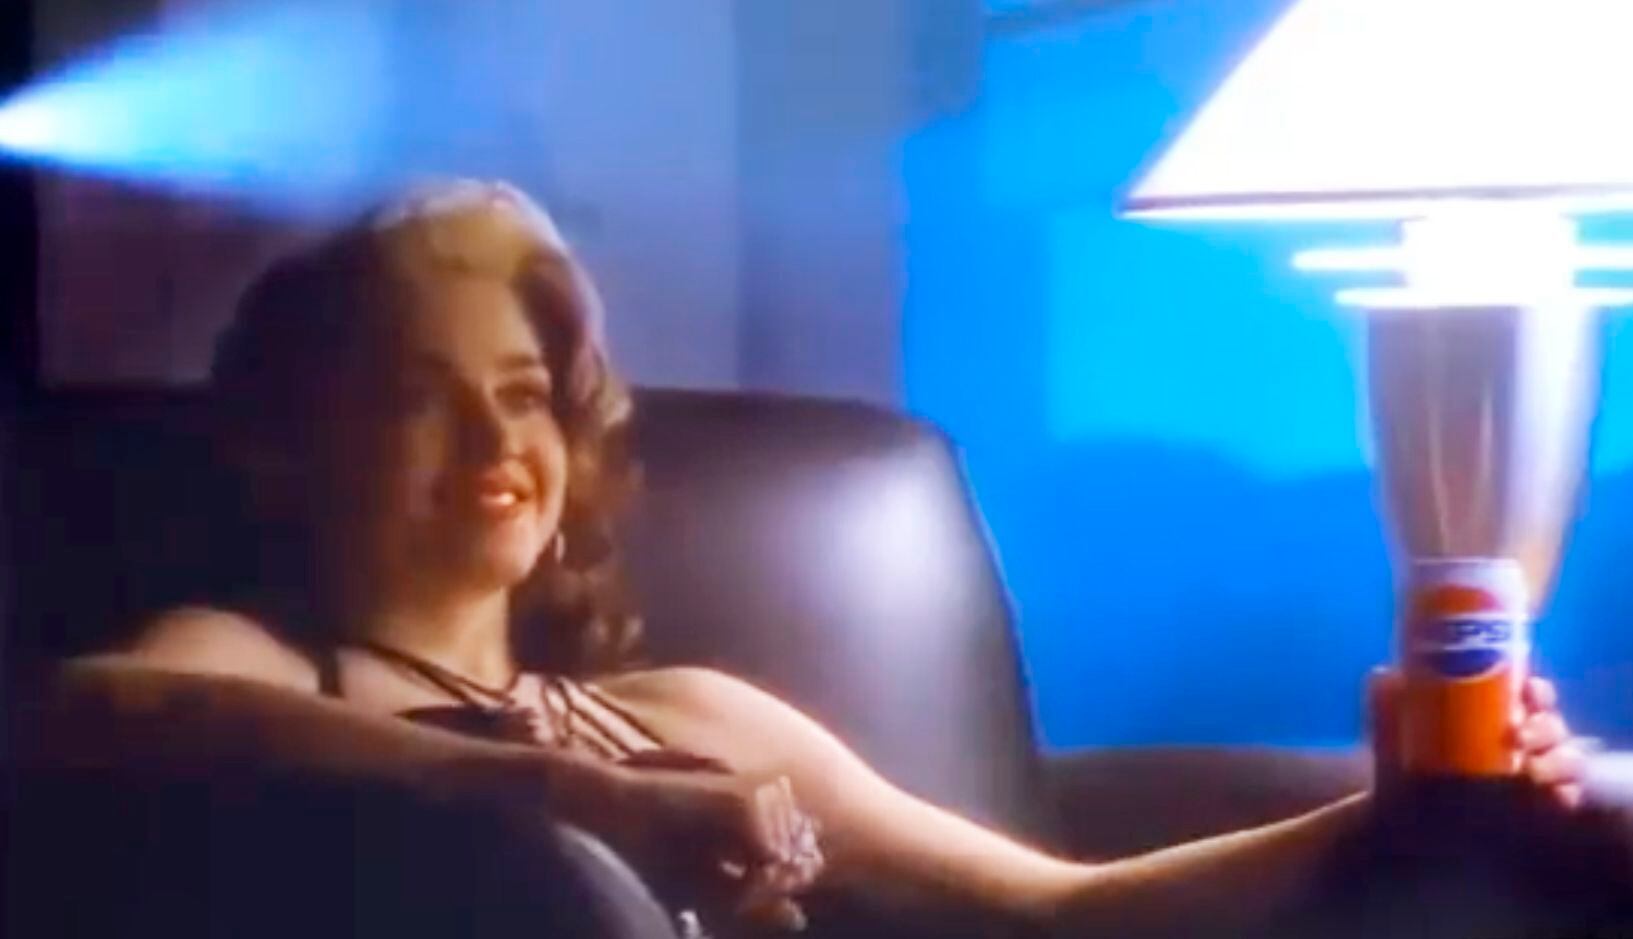 El polémico anuncio de Pepsi con el que Madonna presentó ‘Like a Prayer’ vuelve a ver la luz 34 años después de que fuera censurado | Gente